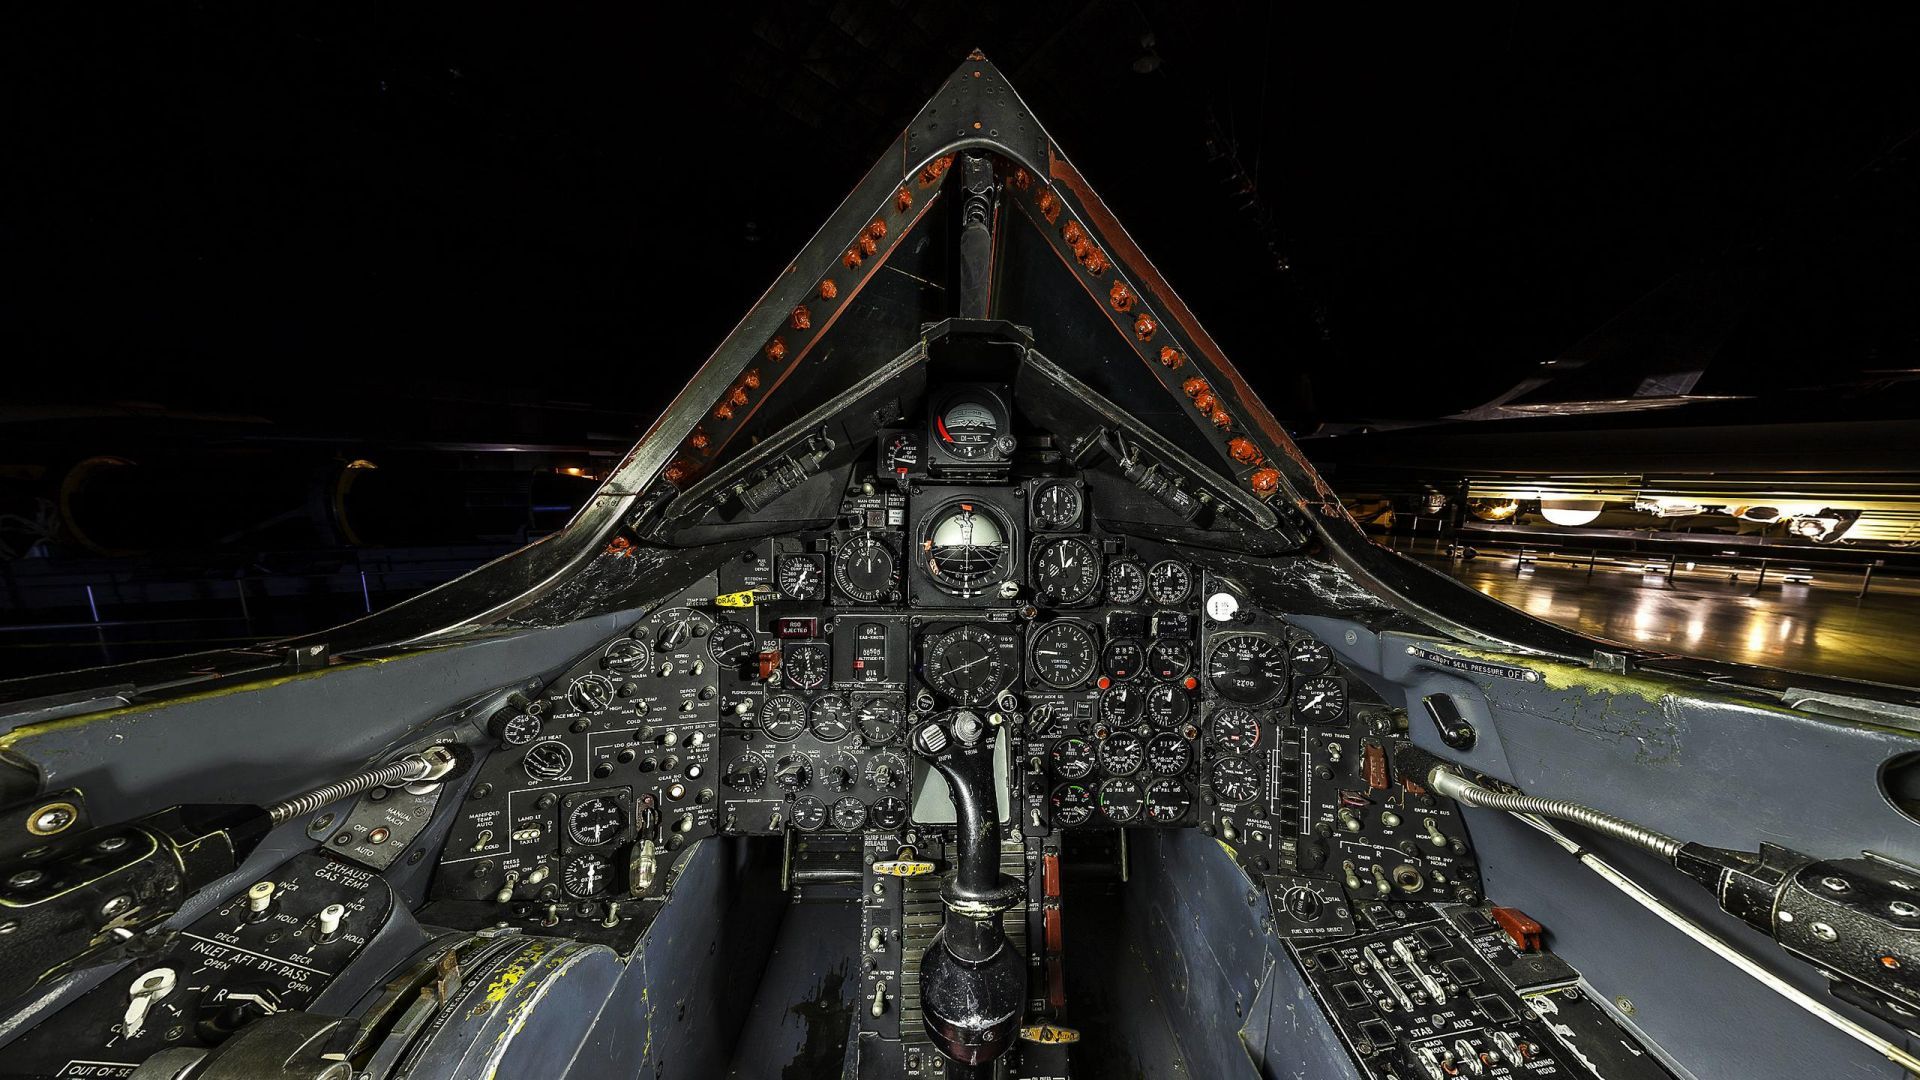 SR- Cockpit wallpaper in 1920x1080 resolution